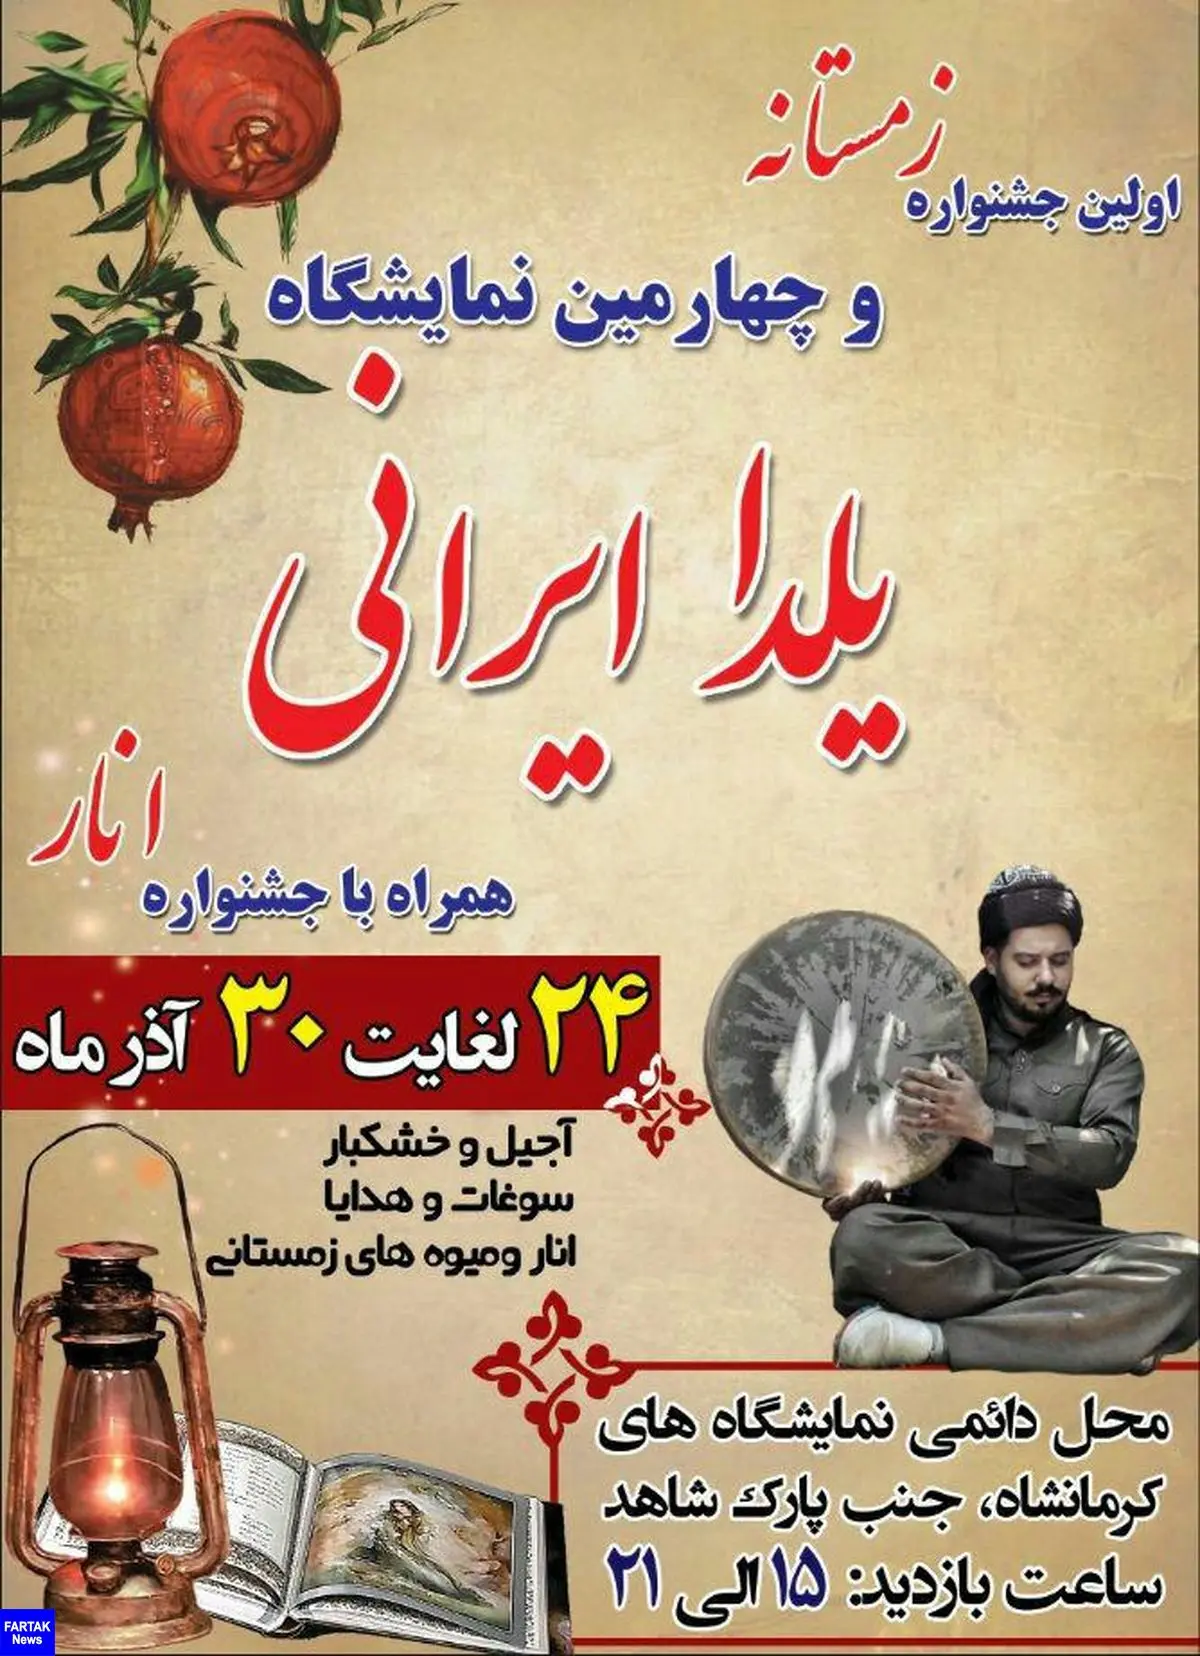 برپایی نخستین جشنواره زمستانه وچهارمین نمایشگاه یلدا در کرمانشاه 